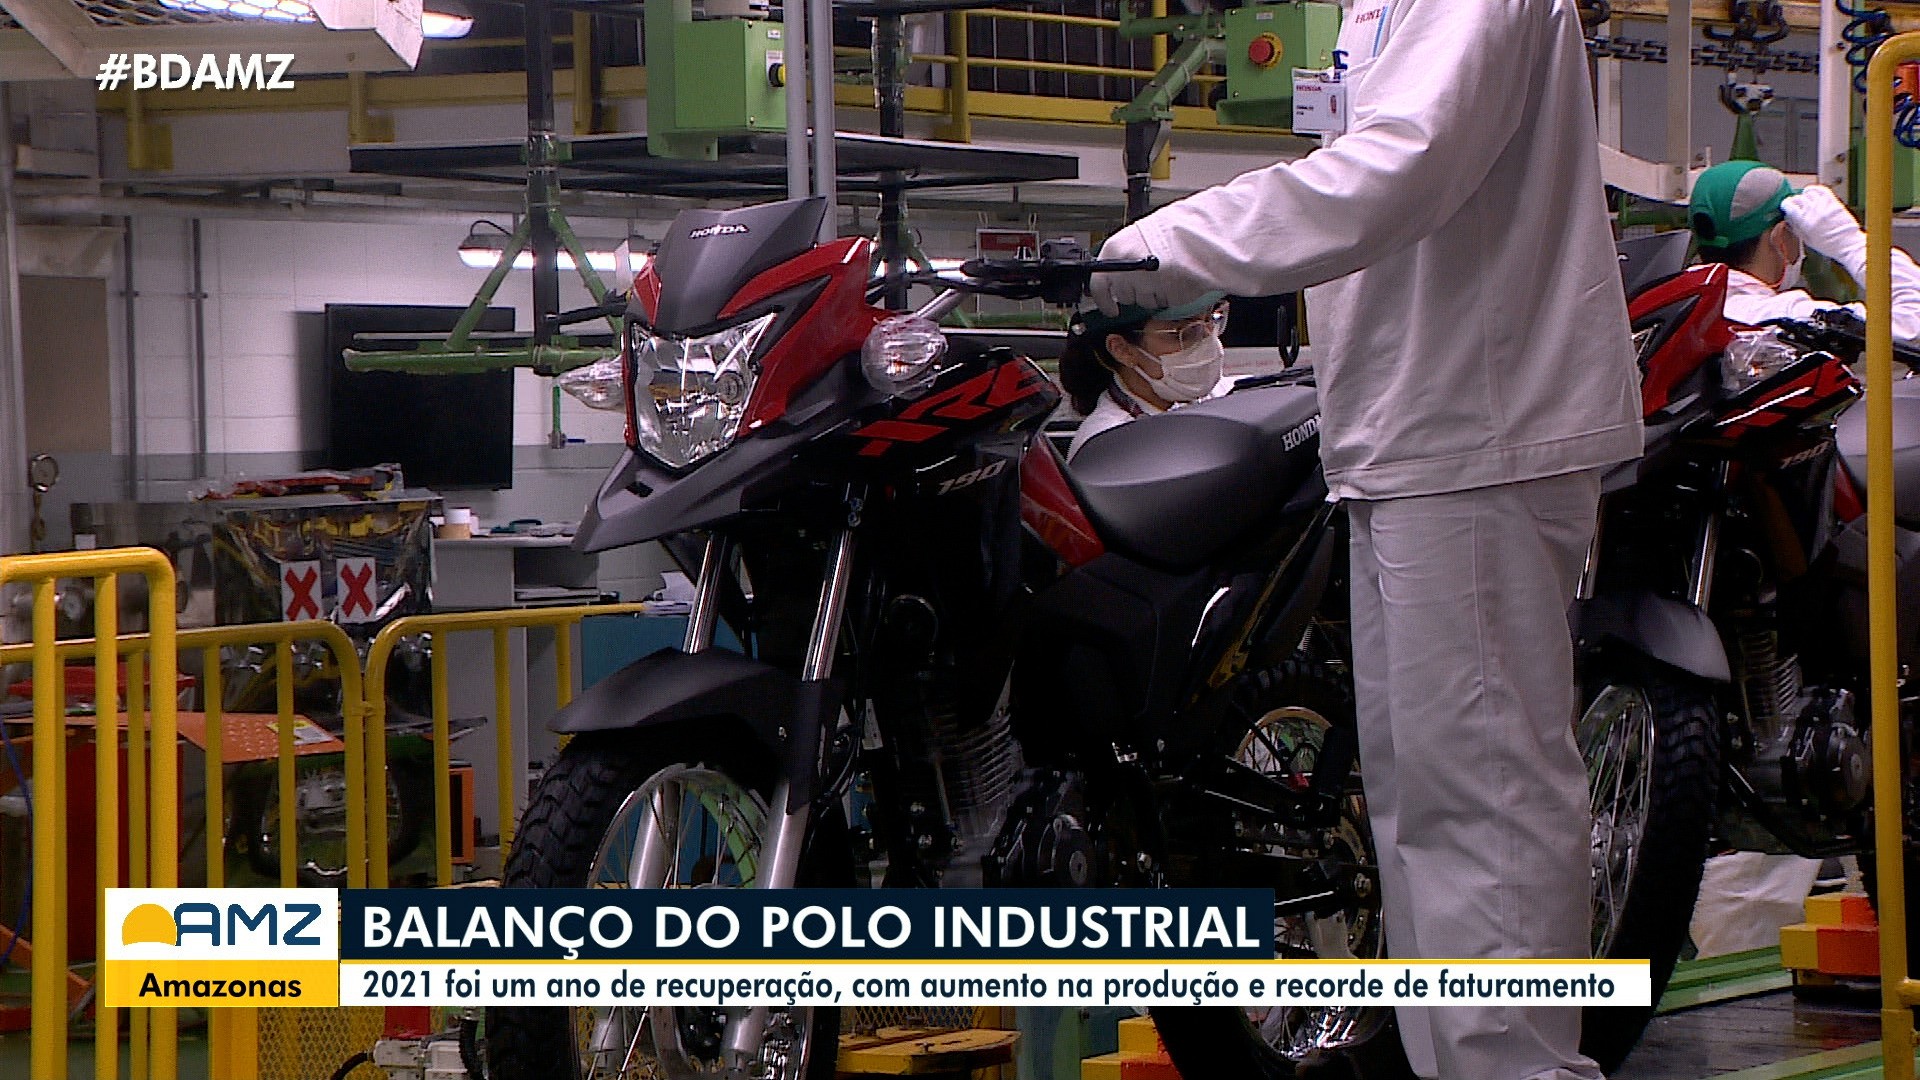 VÍDEOS: Em 2021, Polo Industrial de Manaus registra alta na produção e no faturamento; veja destaques do BDA